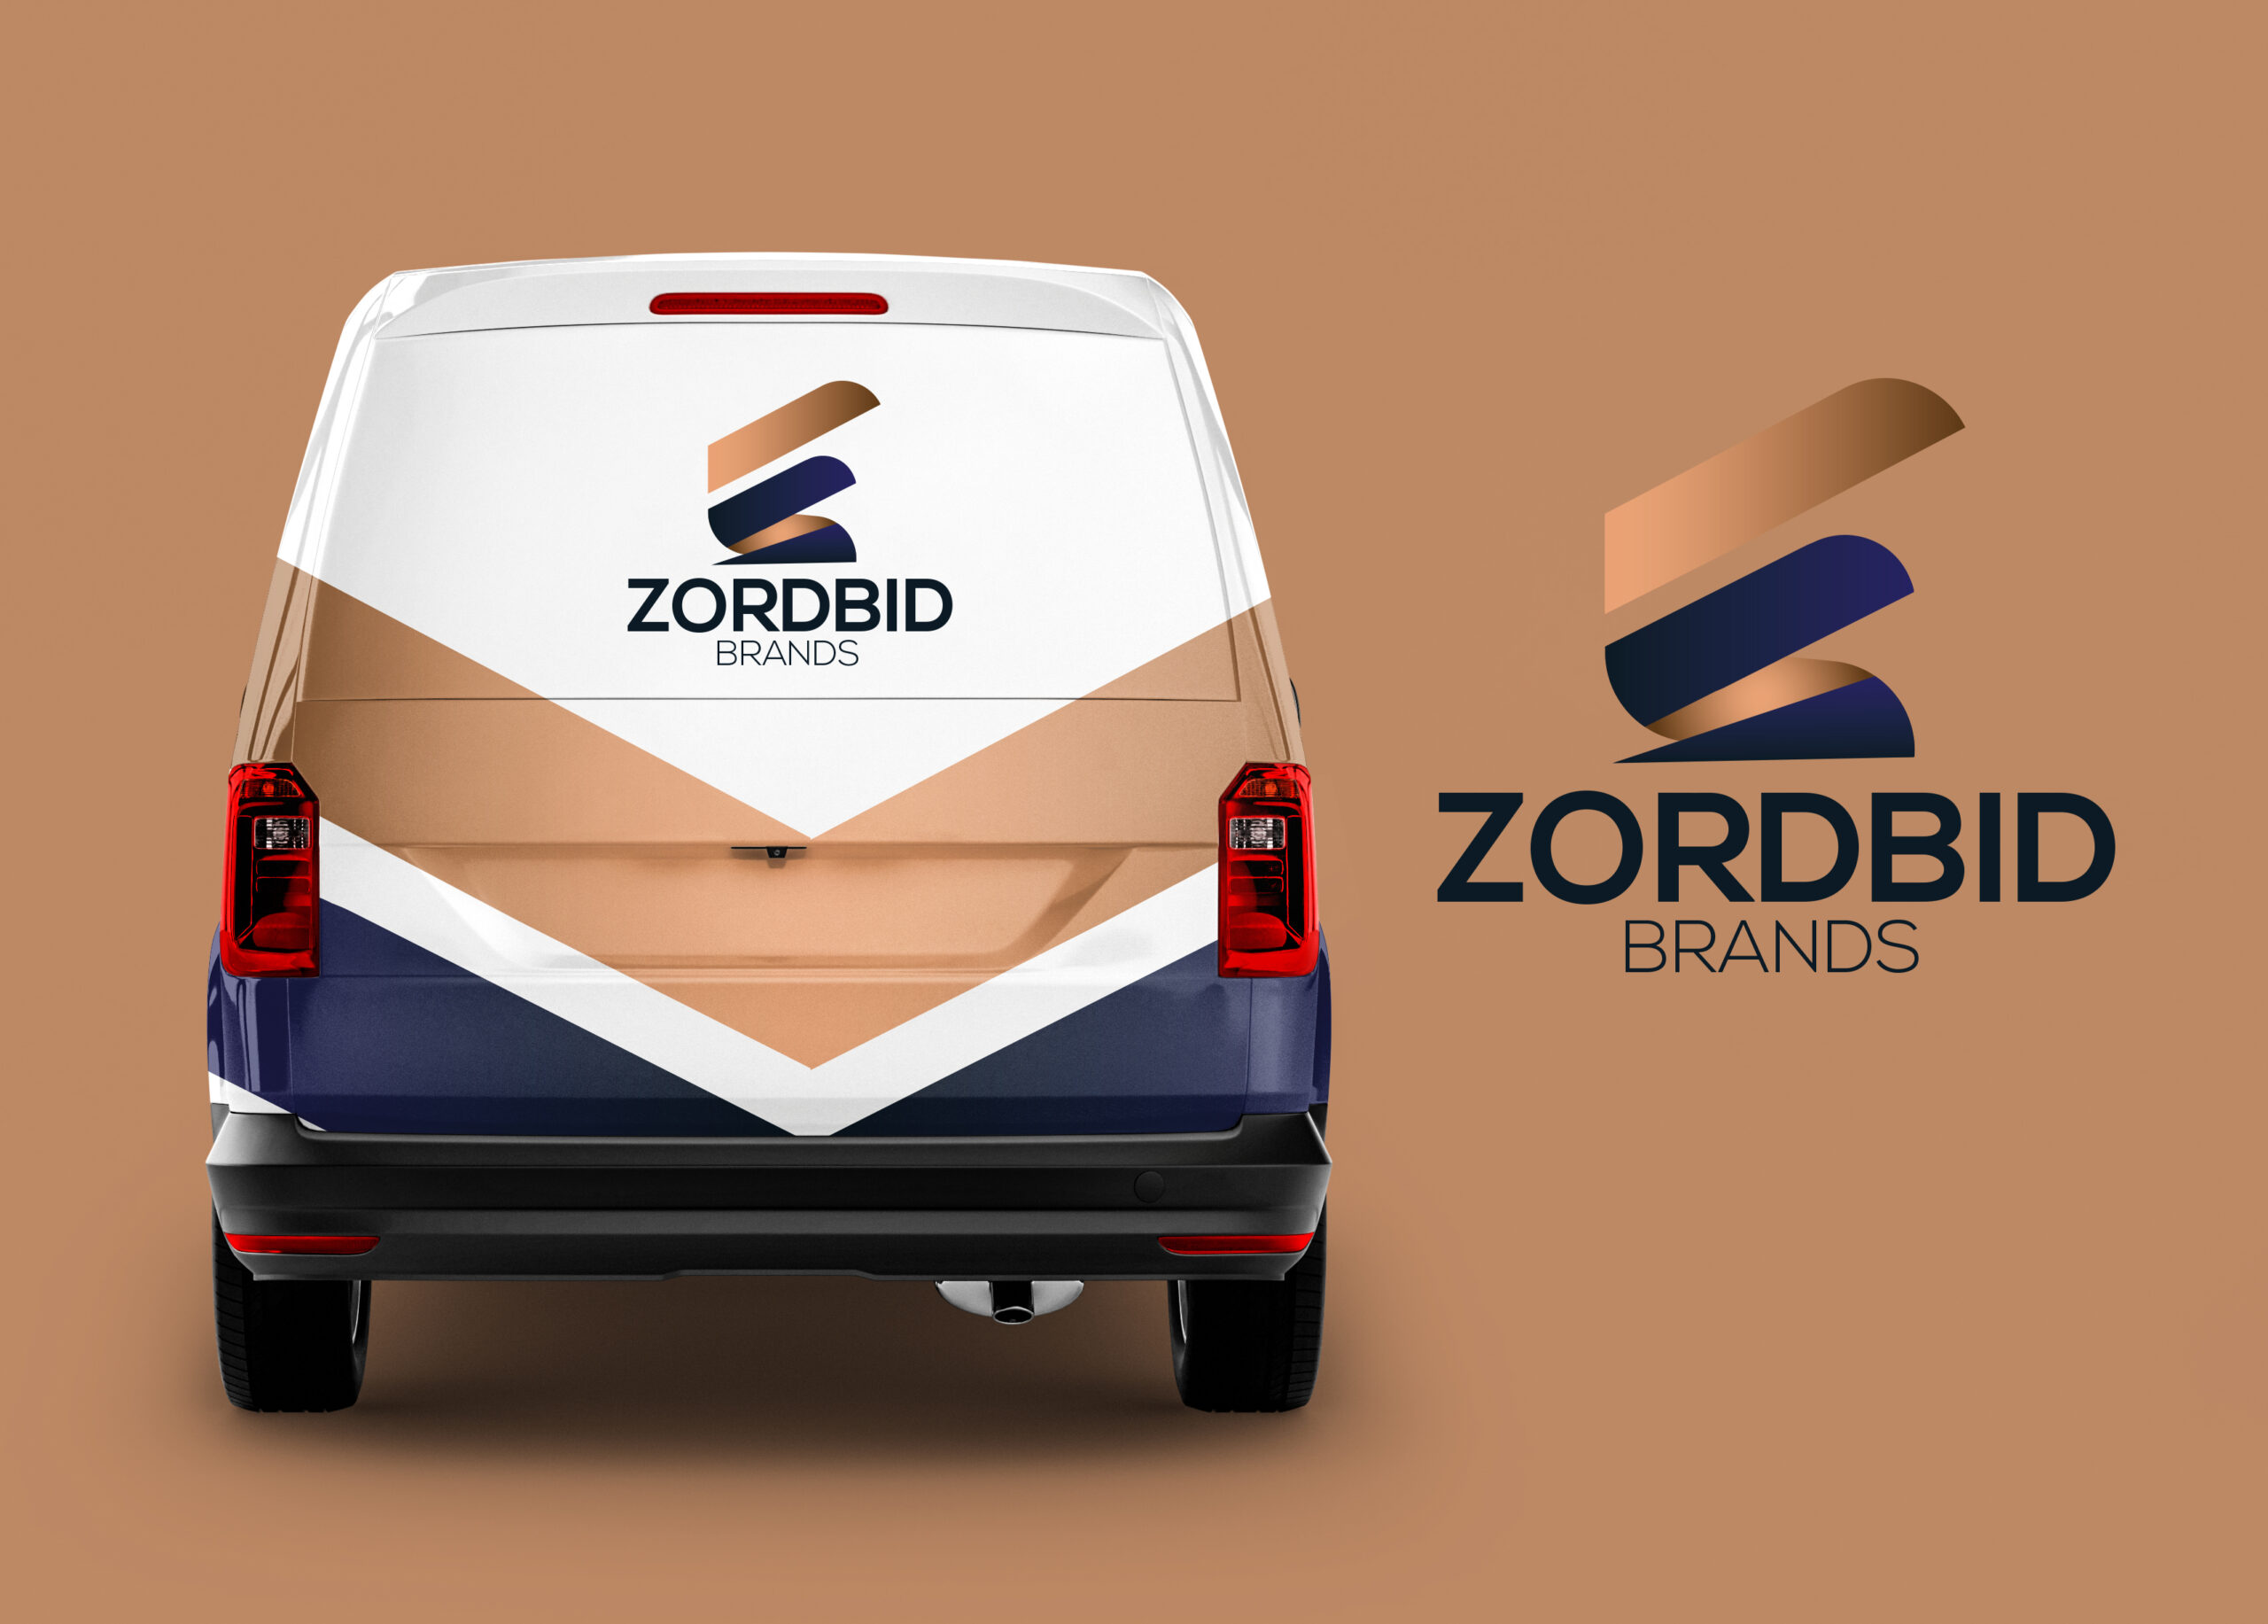 Zordbid Brands